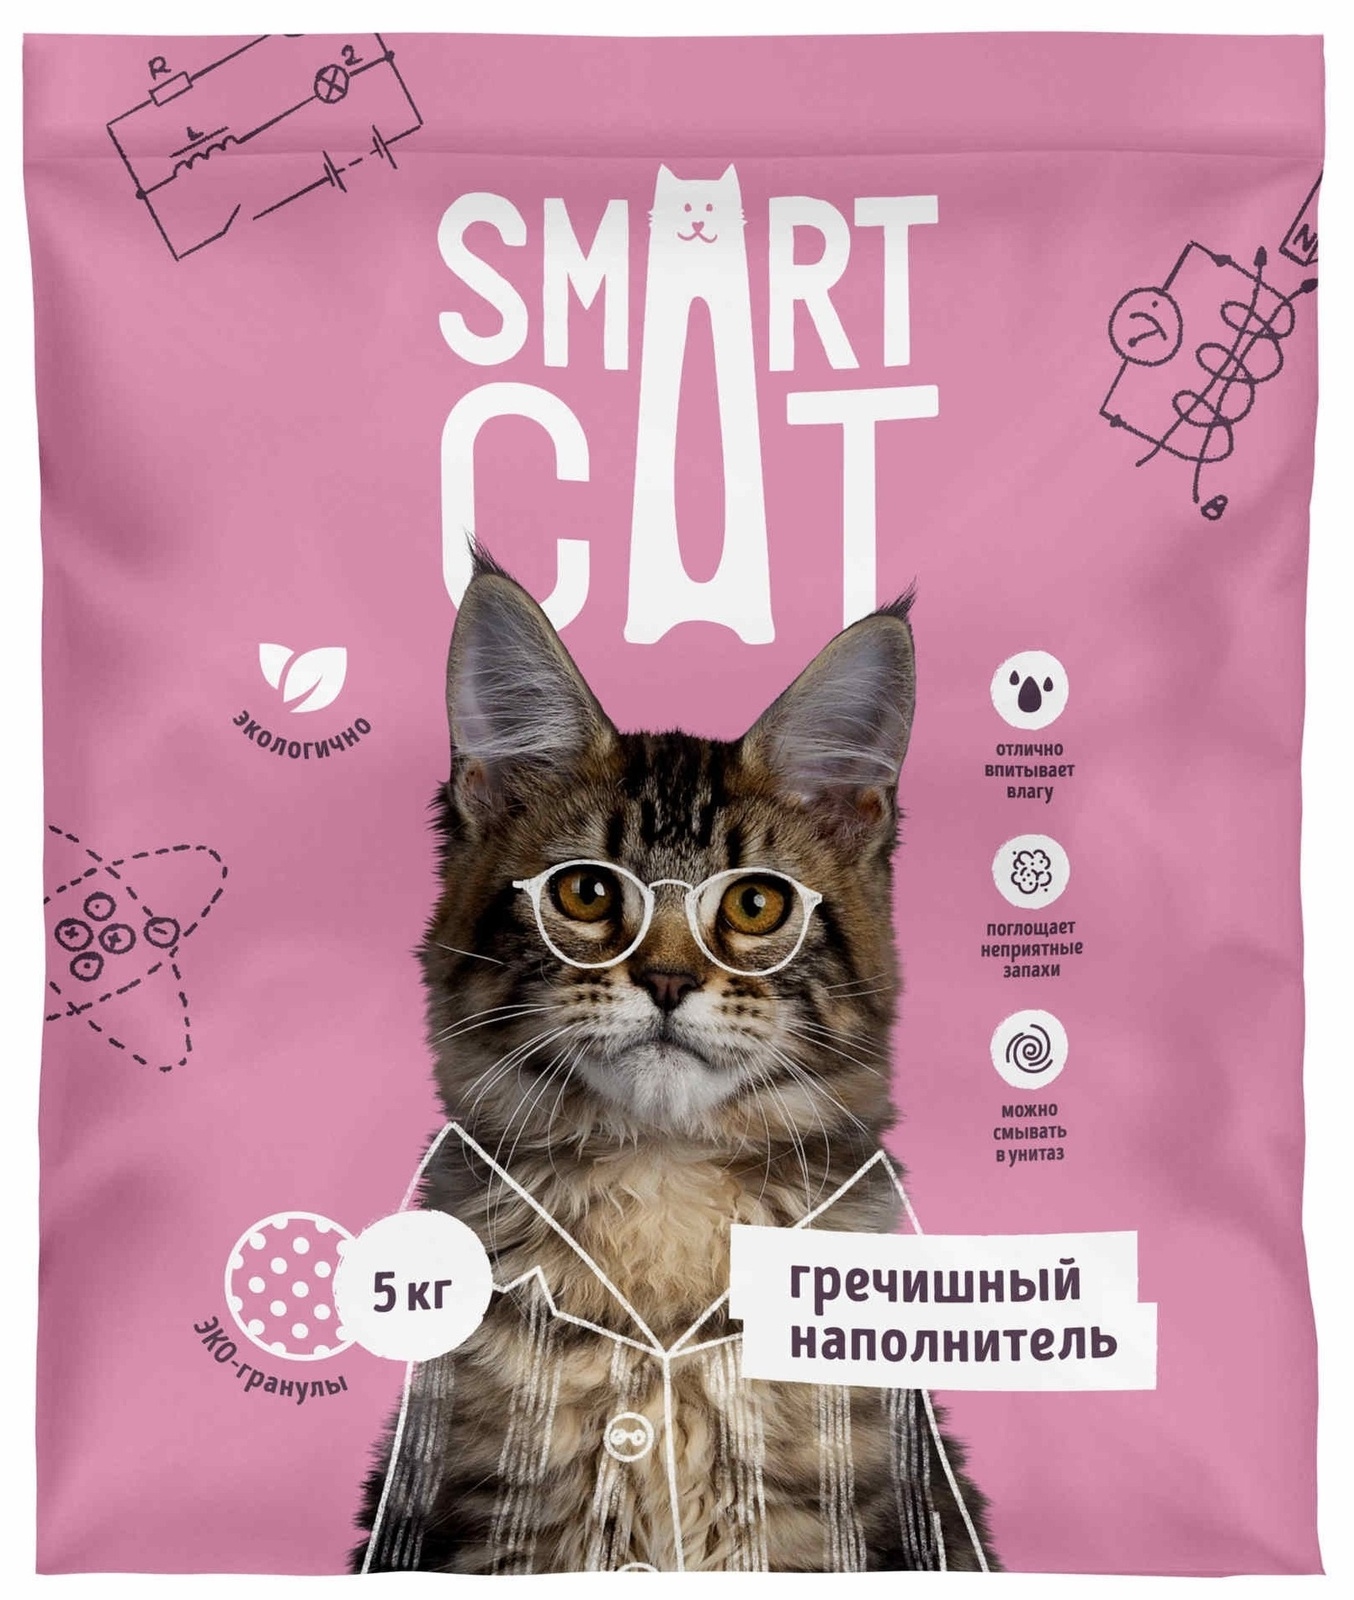 Smart Cat наполнитель Smart Cat наполнитель гречишный наполнитель (5 кг) smart cat наполнитель smart cat наполнитель комкующийся наполнитель 10 кг